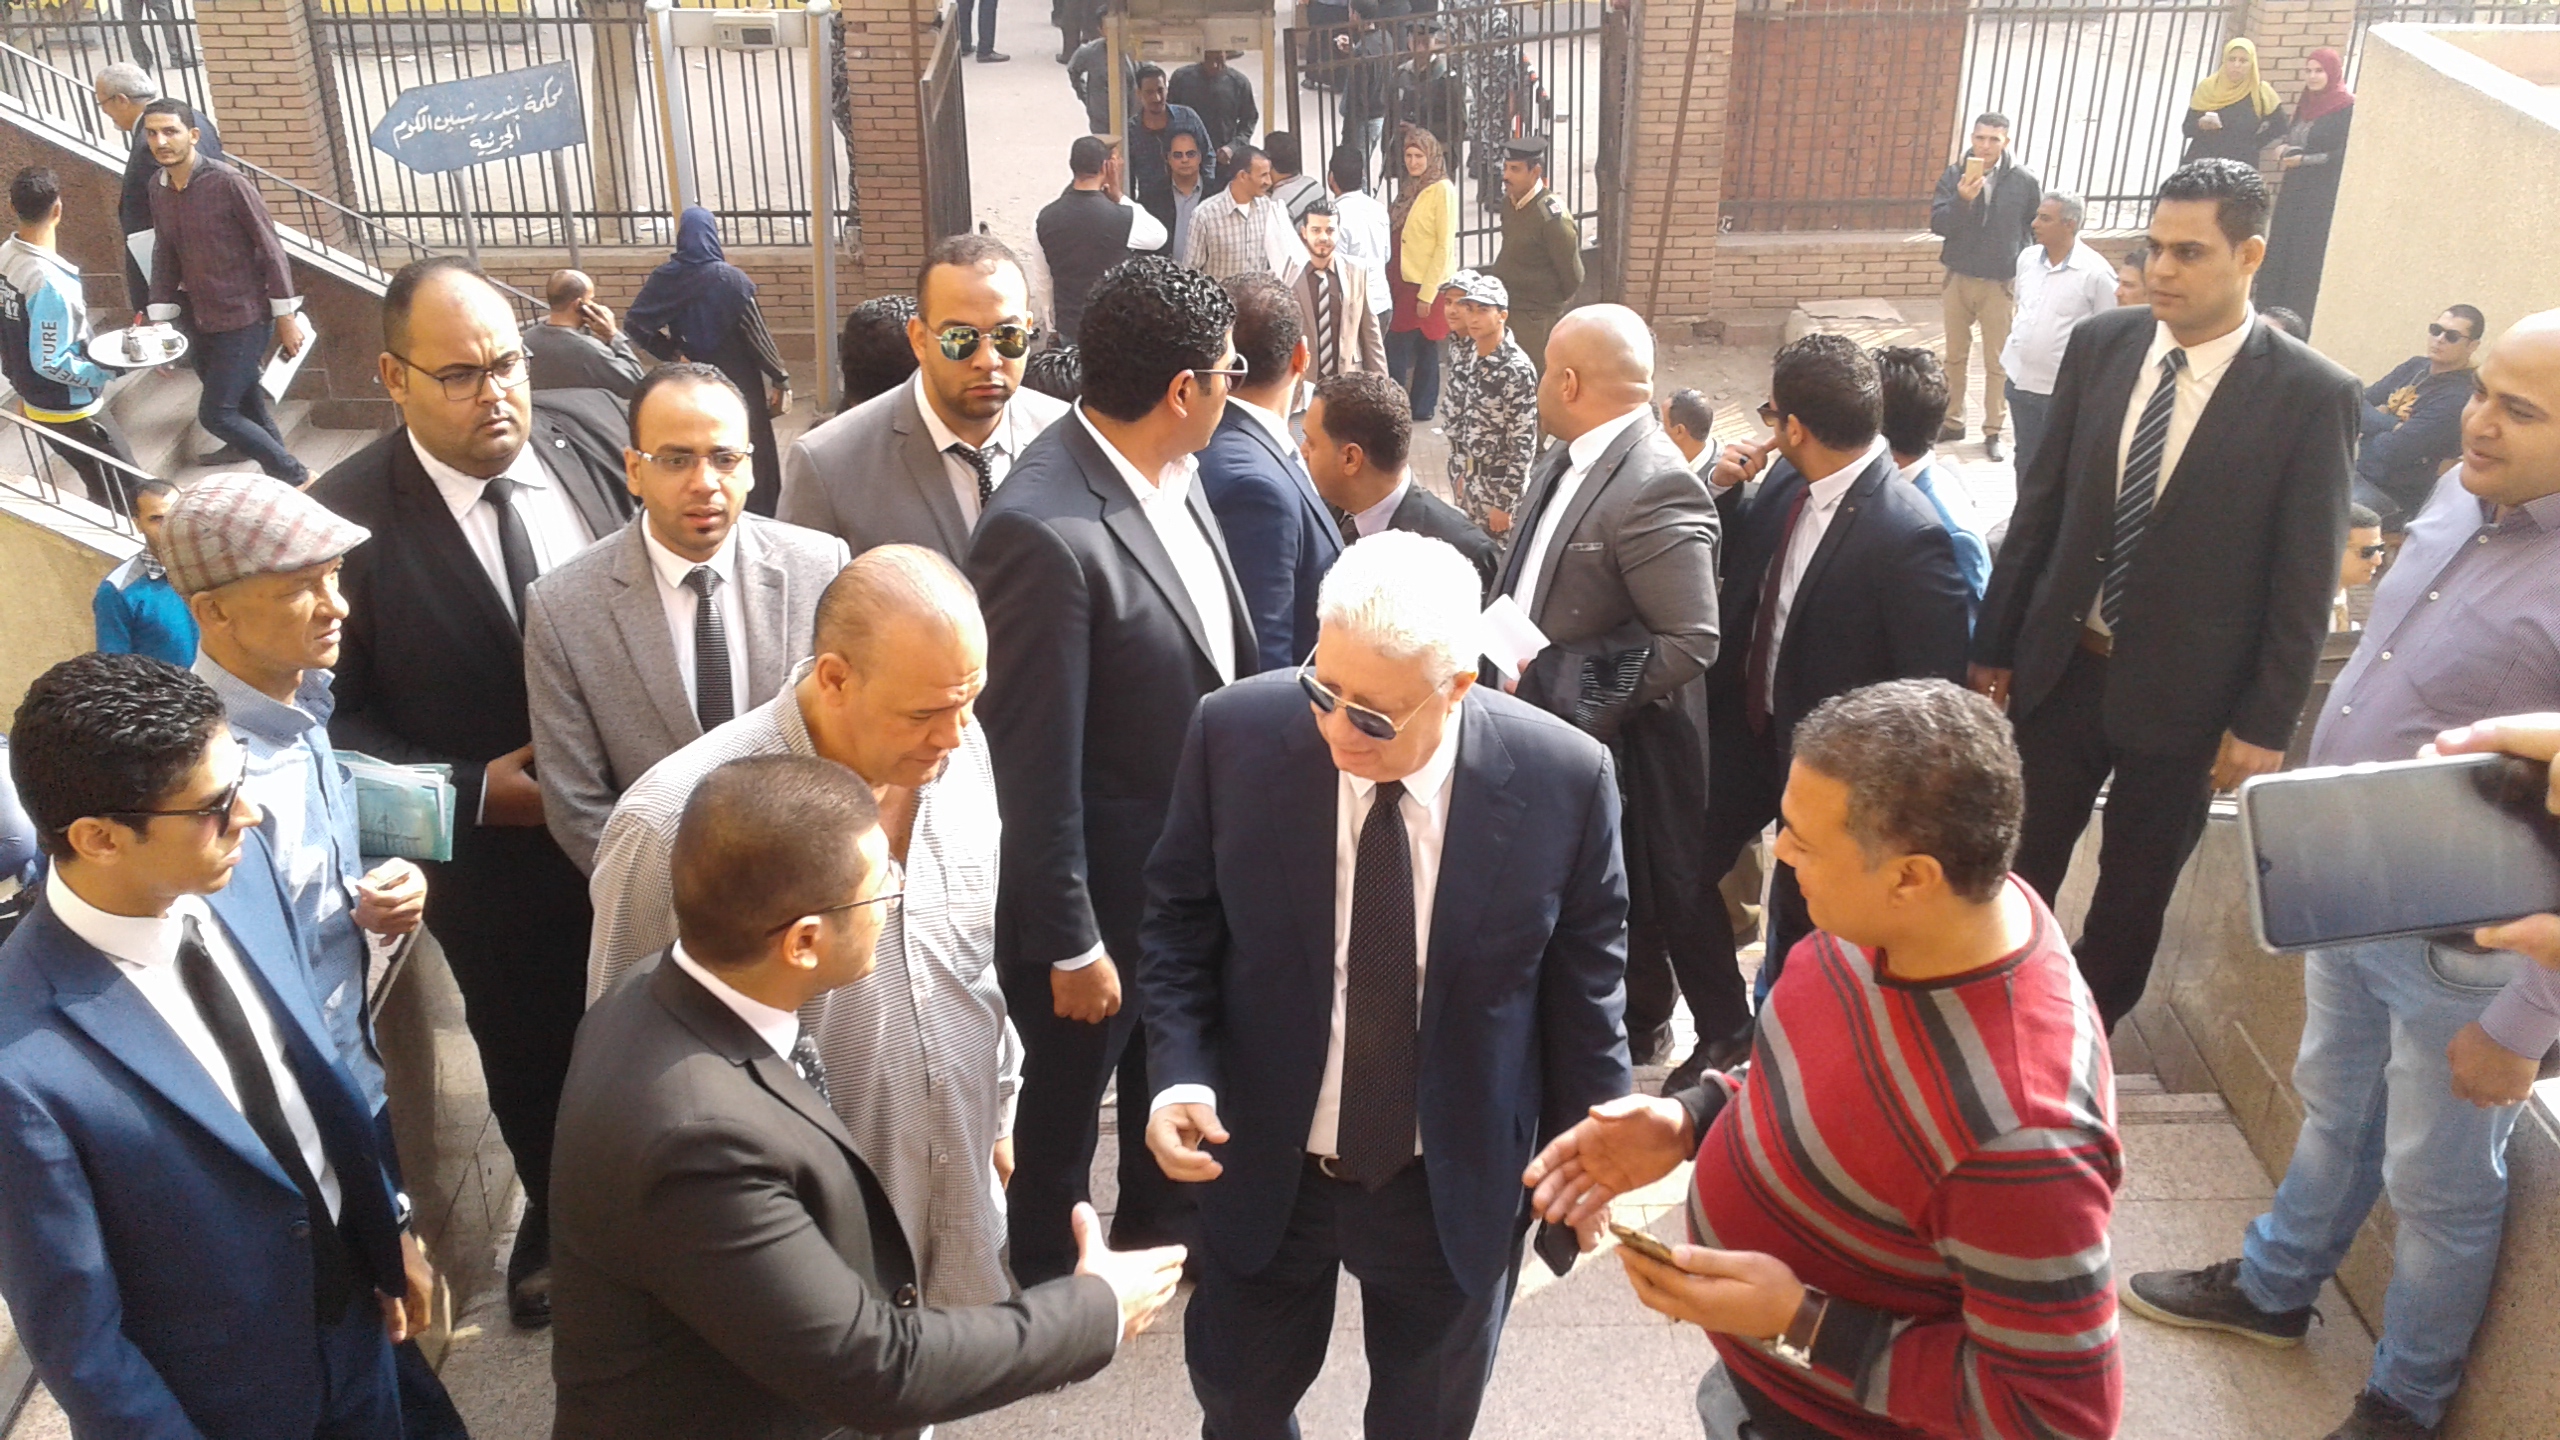 وصول مرتضى منصور لمحكمة شبين الكوم